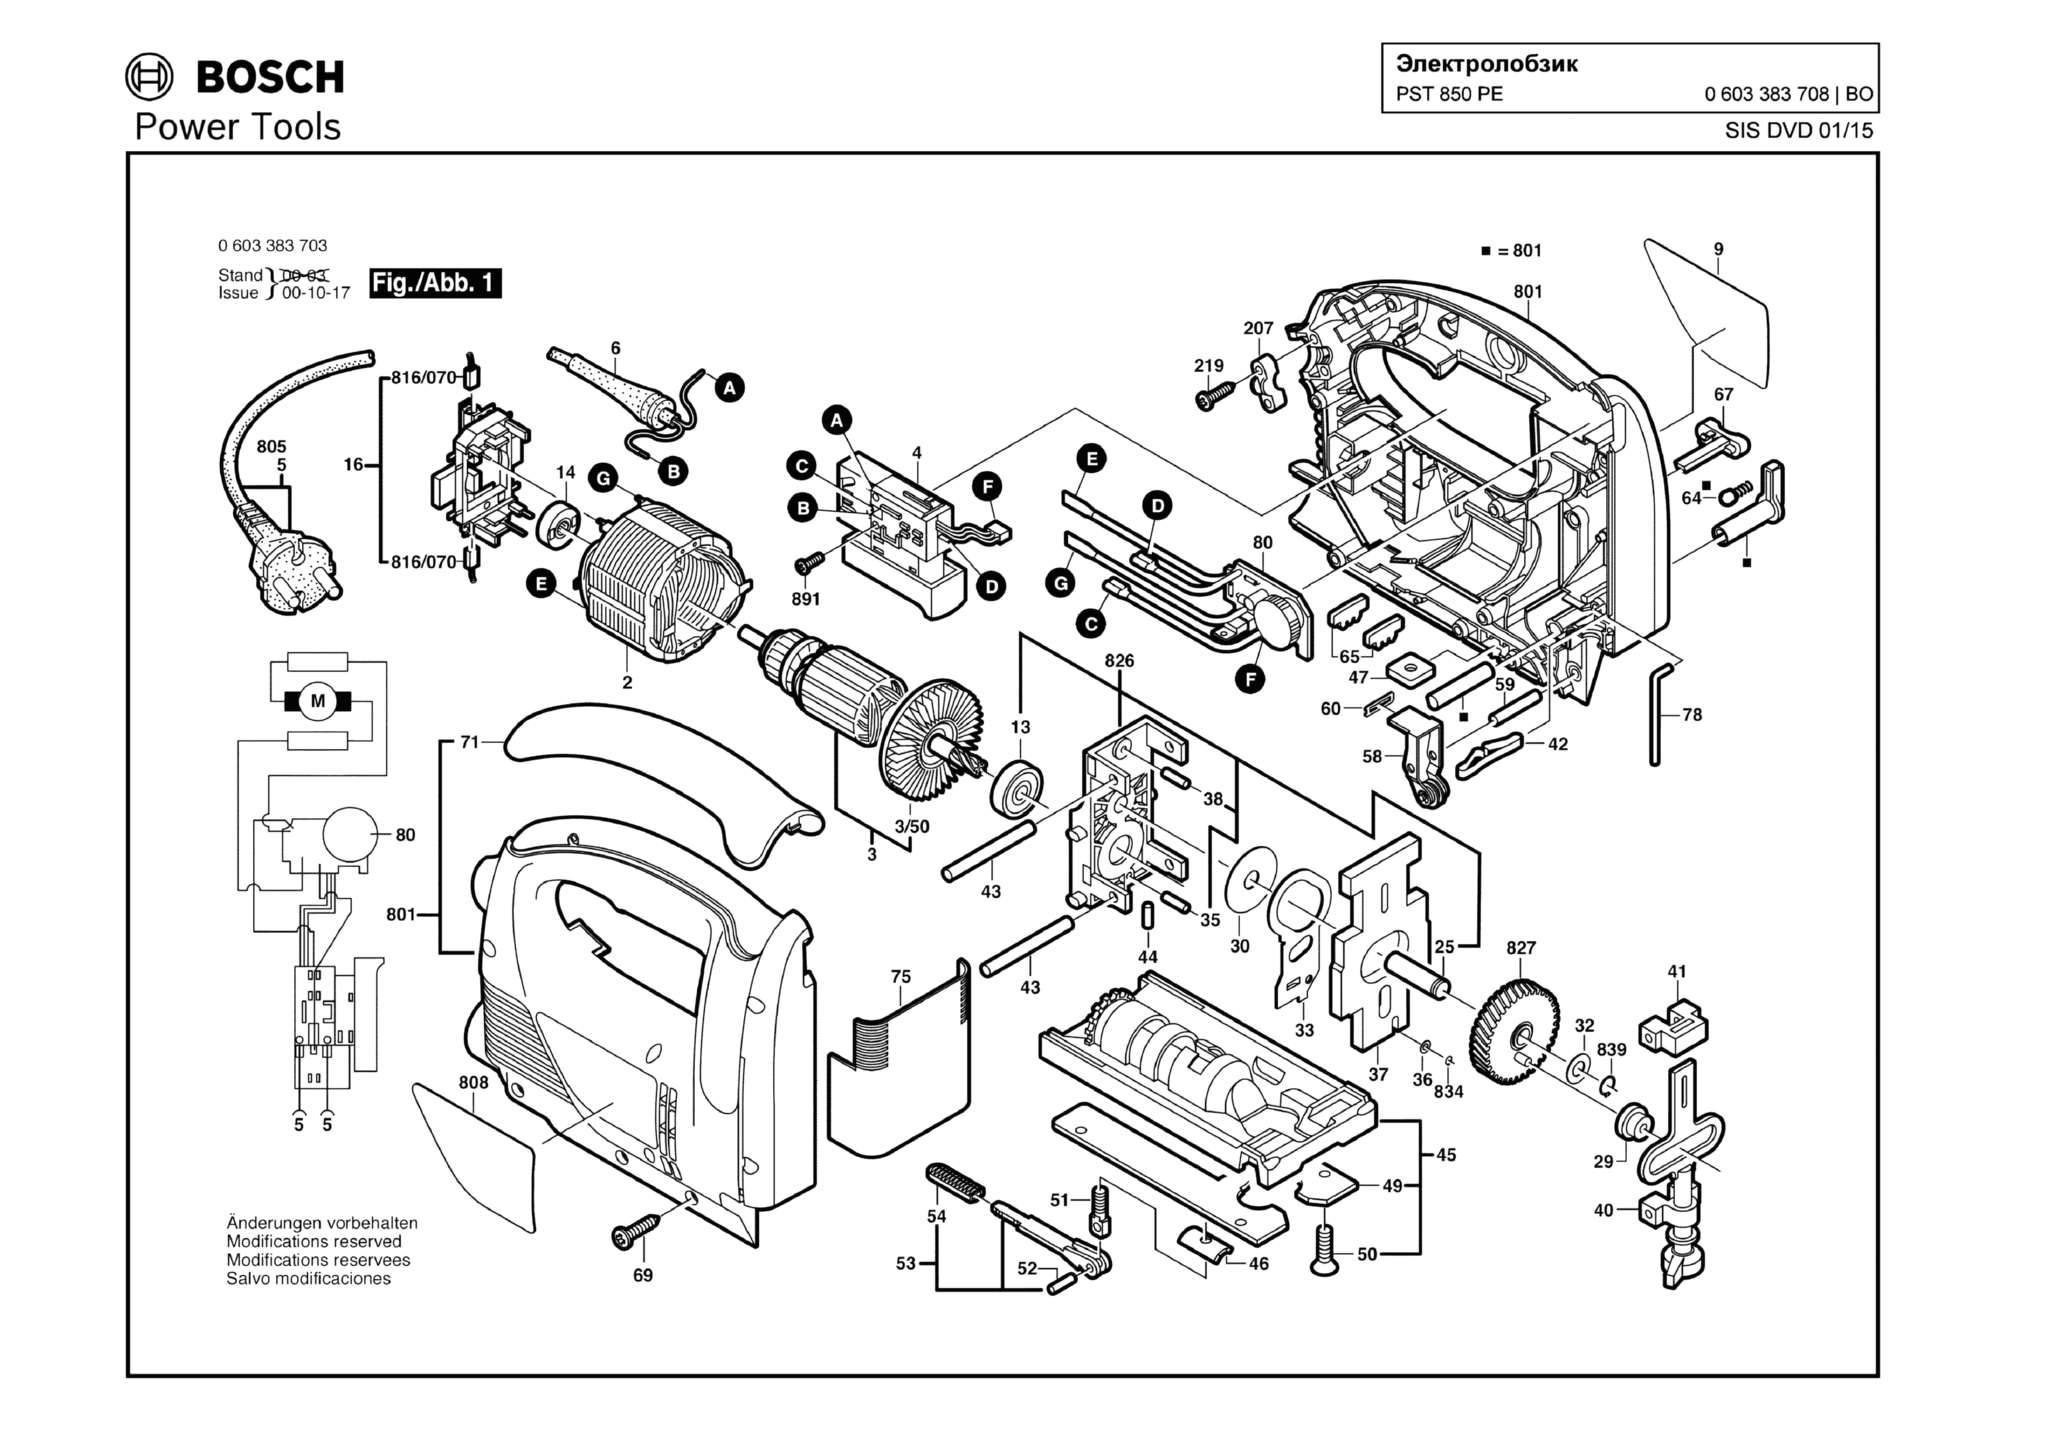 Запчасти, схема и деталировка Bosch PST 850 PE (ТИП 0603383708)